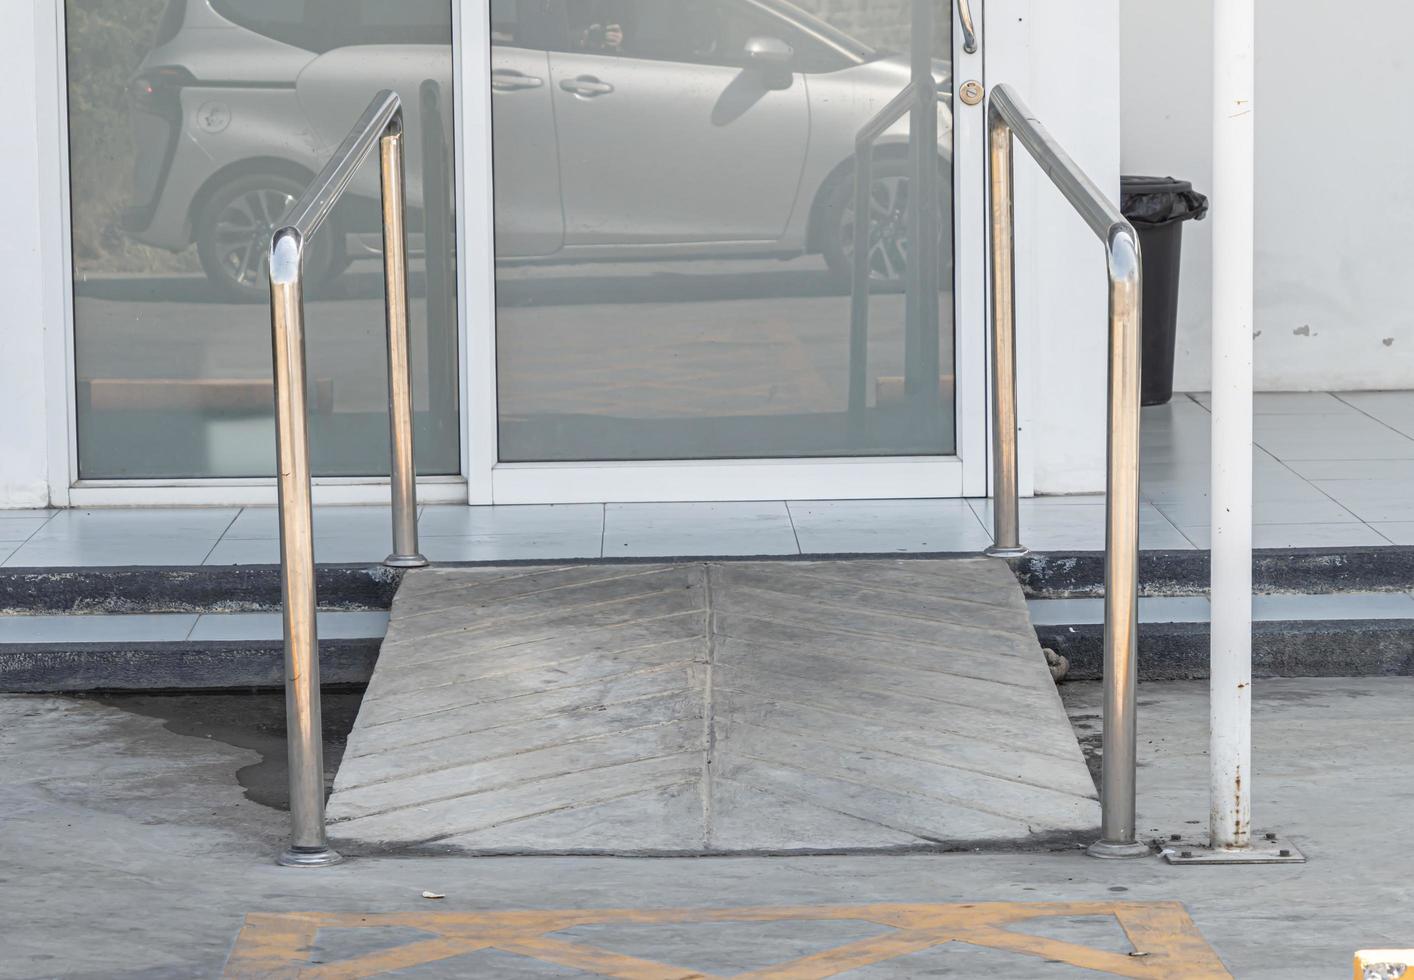 trilha de entrada do prédio com rampa para idosos ou pessoas com deficiência que não podem se auto-ajudar em cadeira de rodas. foto